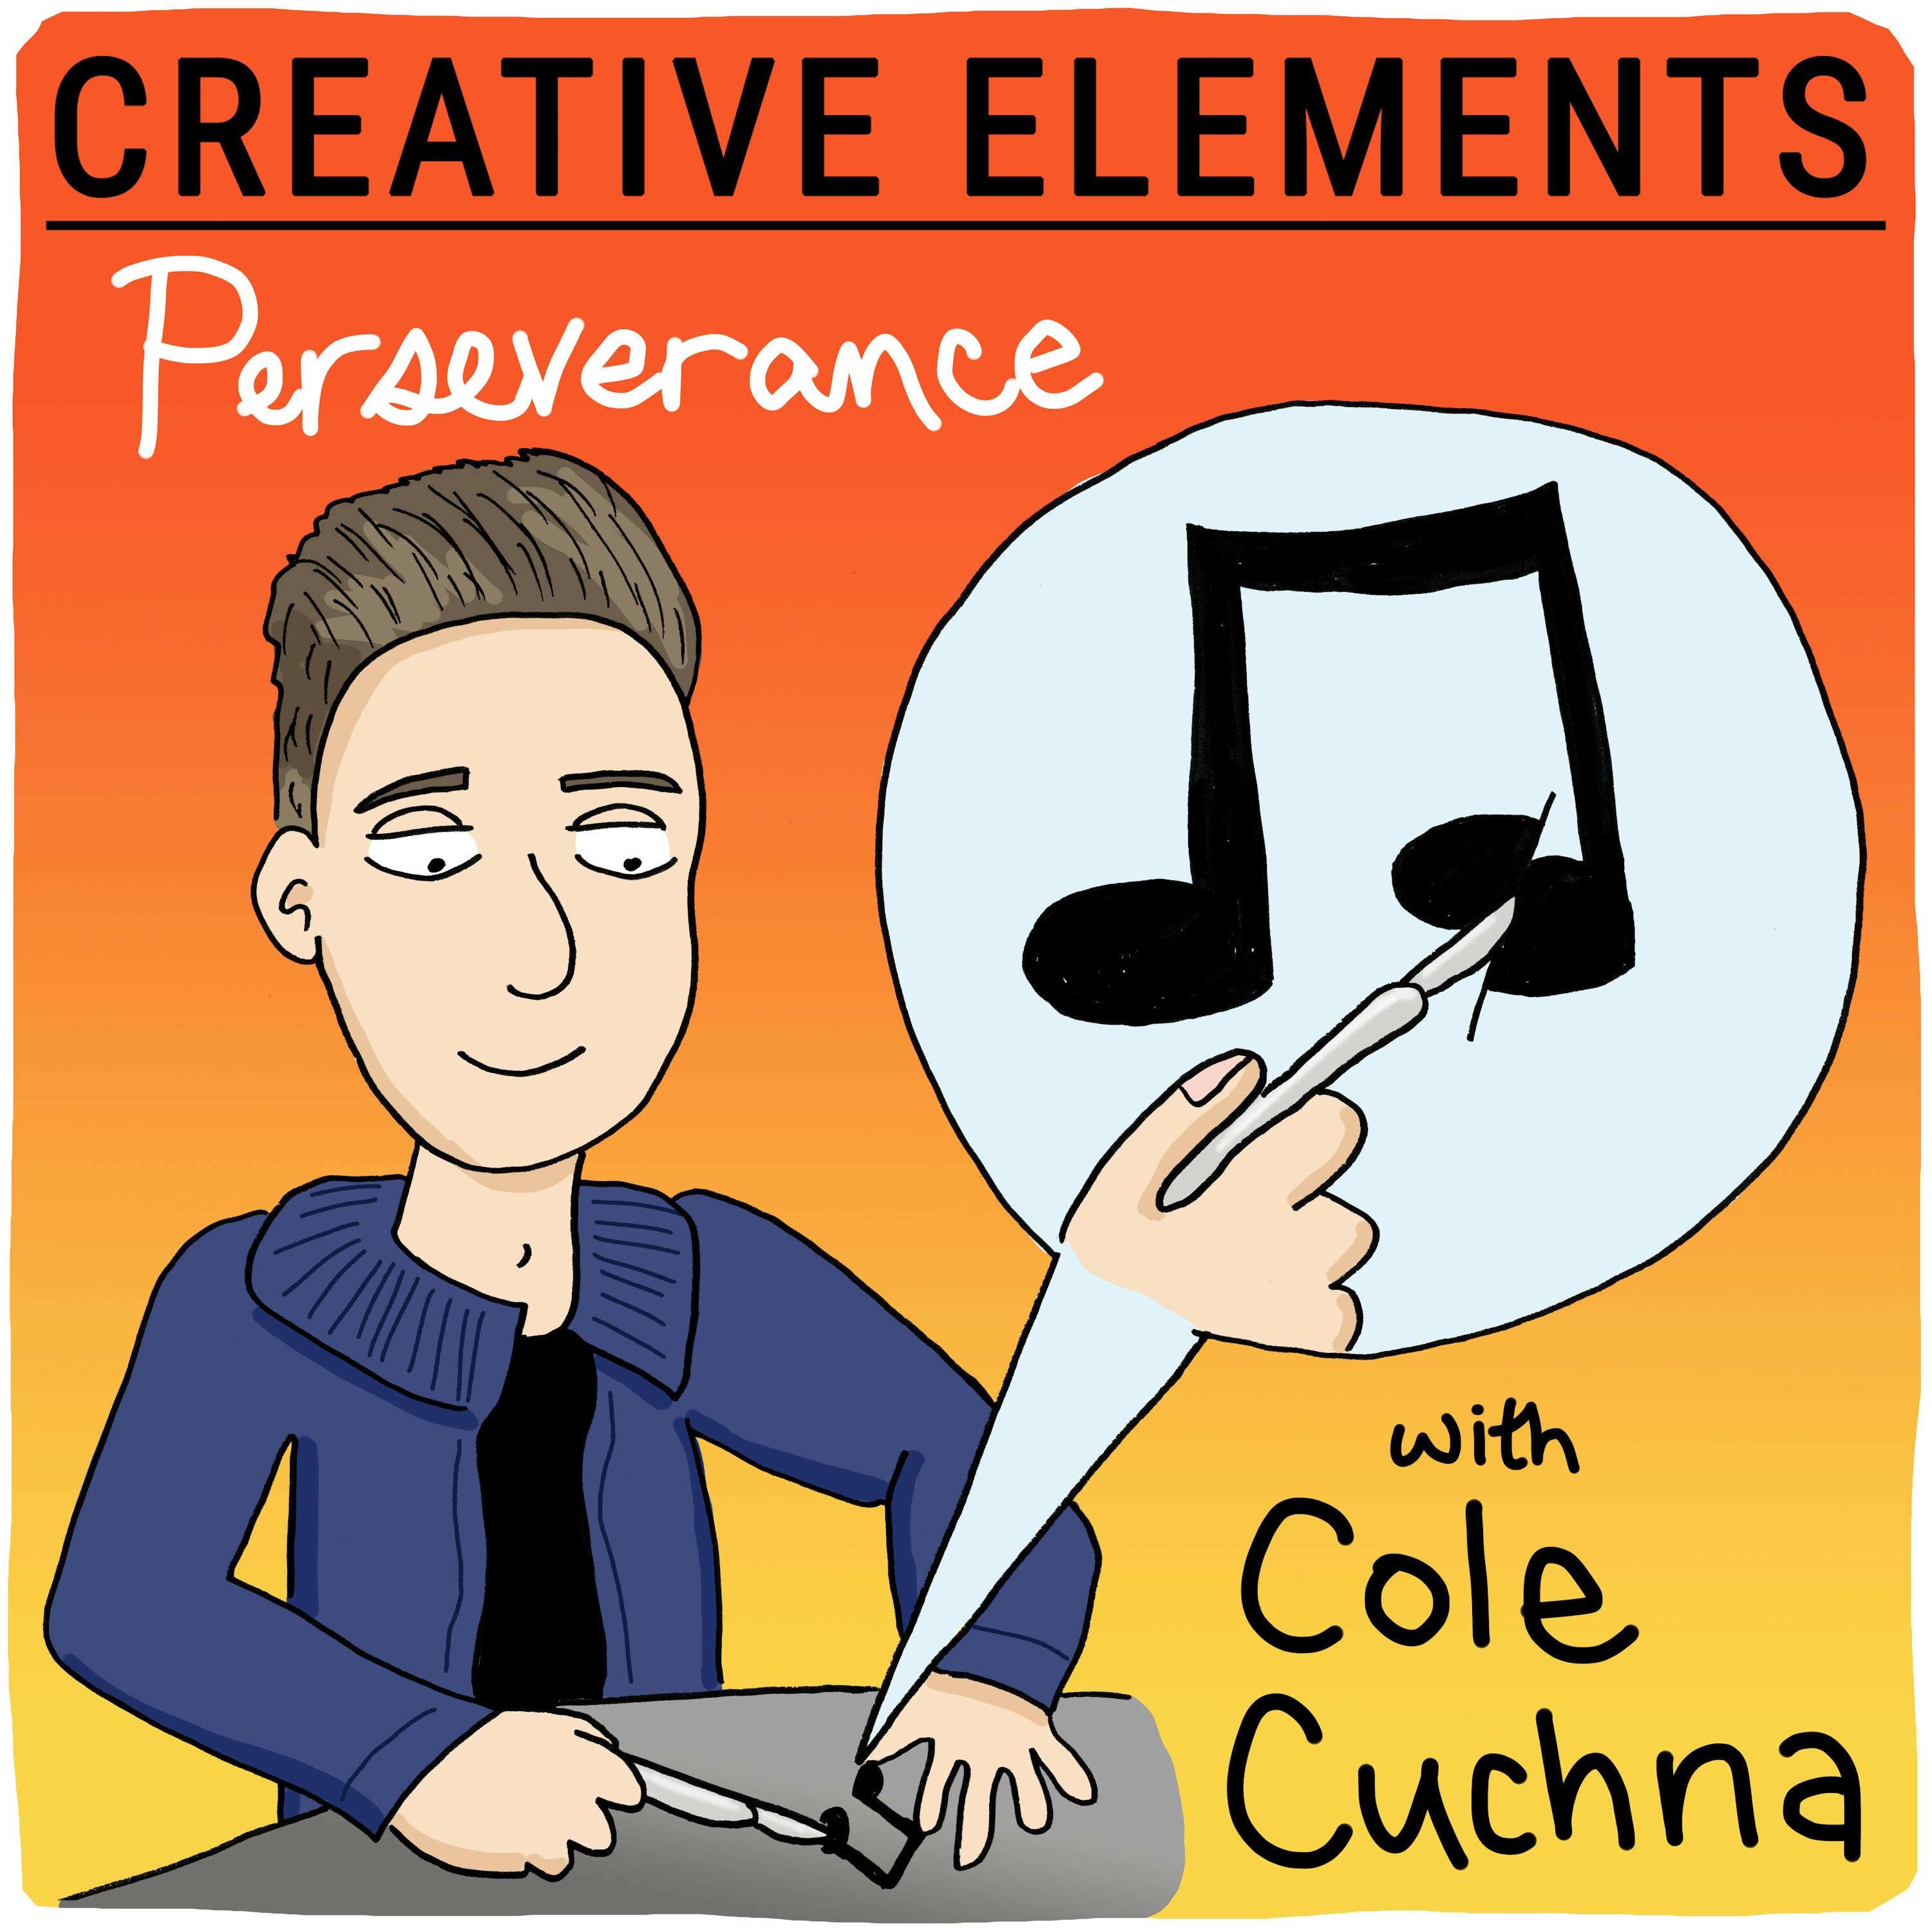 #52: Cole Cuchna [Perseverance]